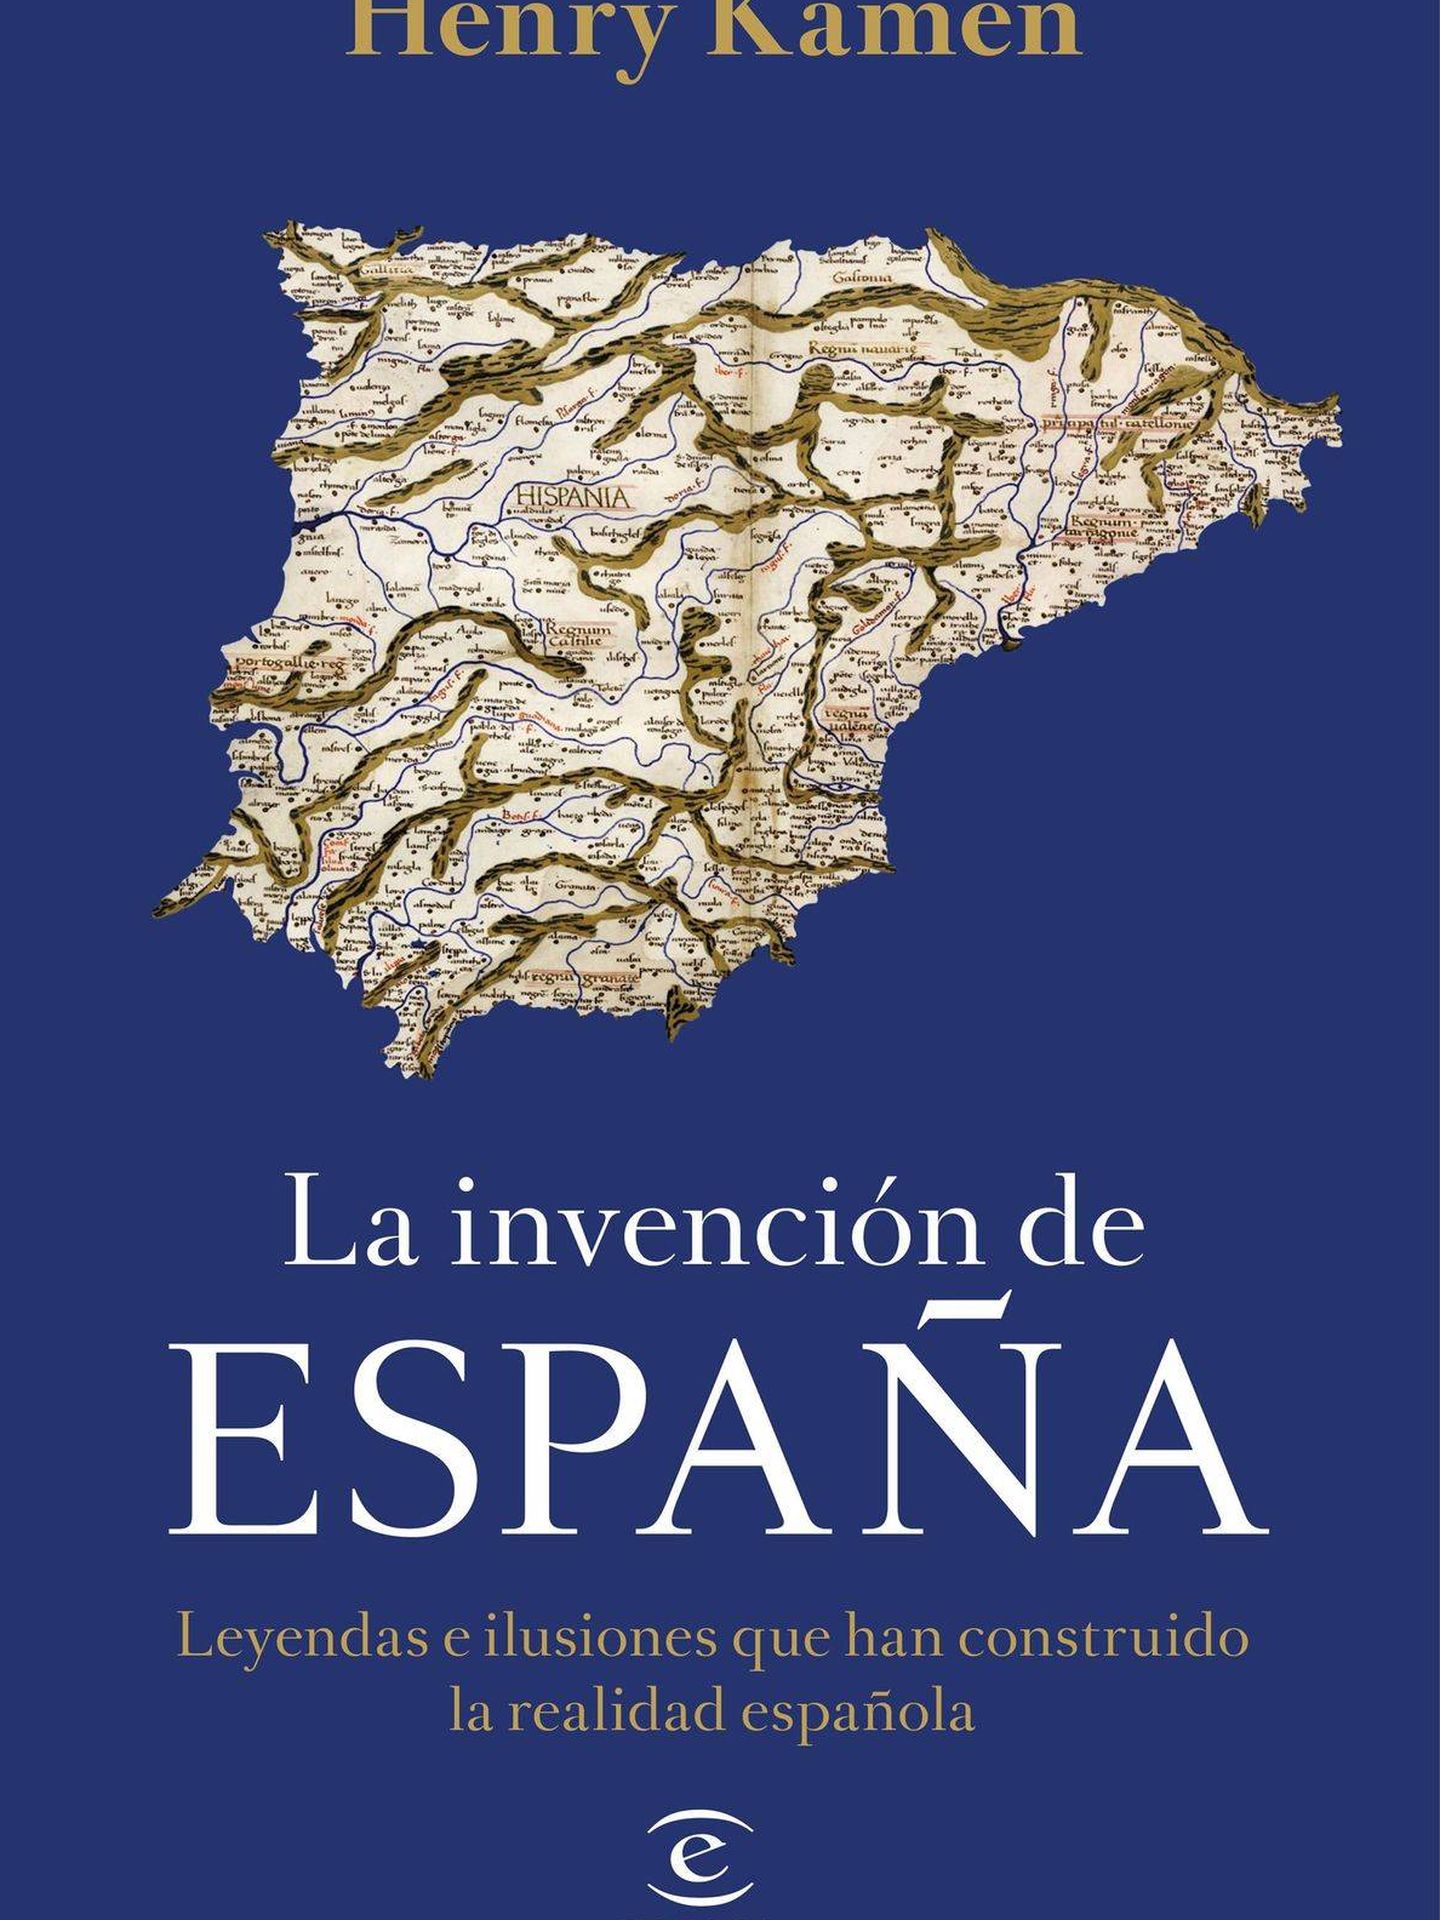 'La invención de España'.